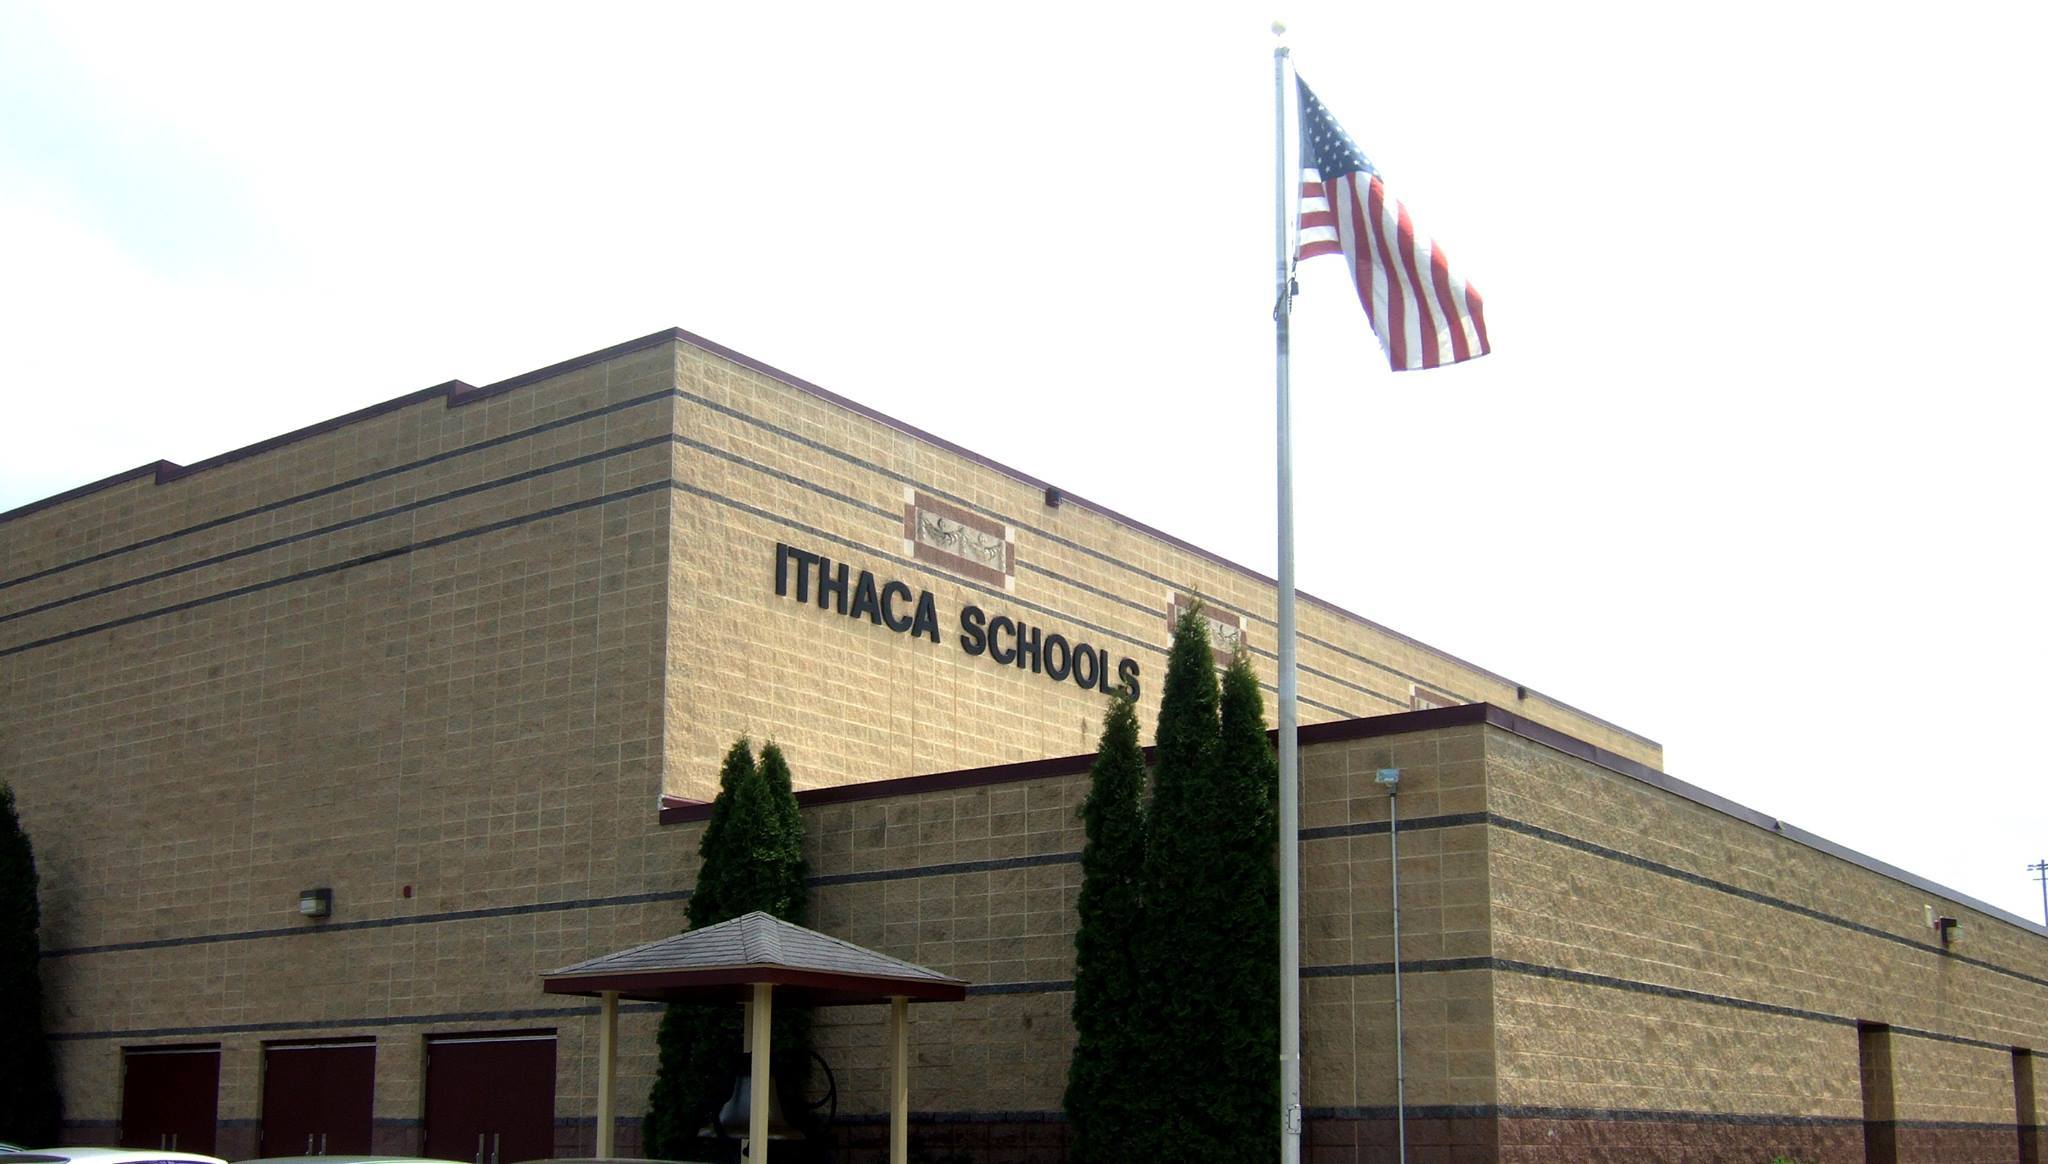 Ithaca School District